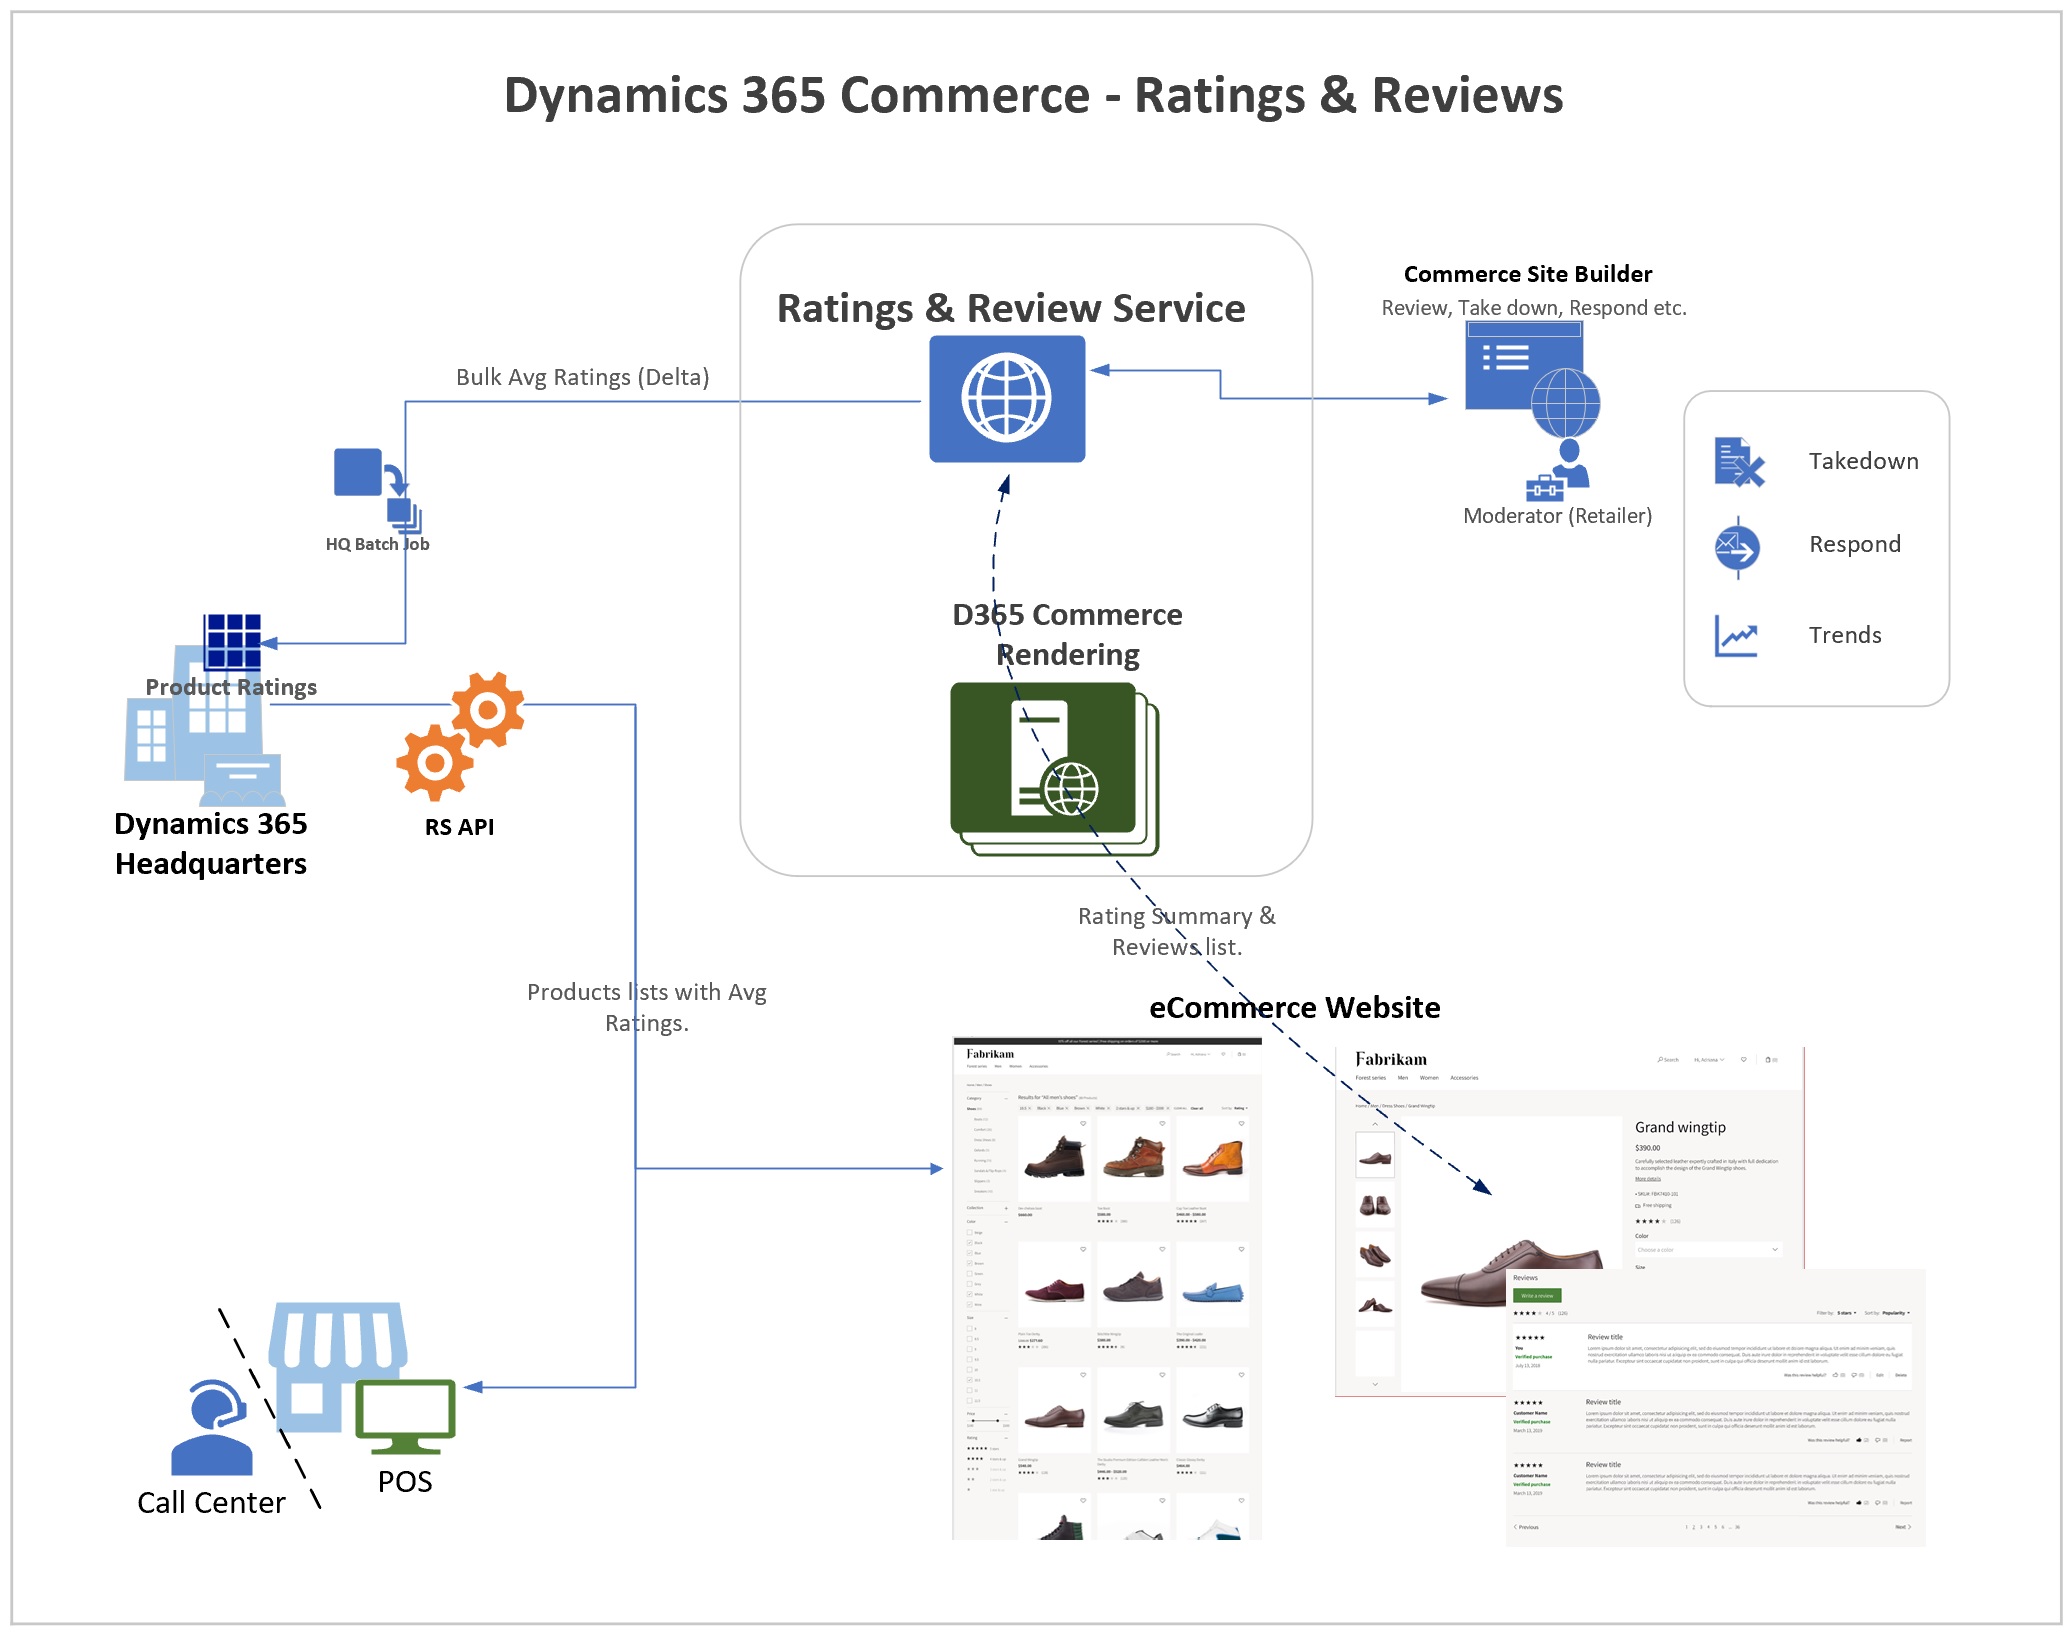 Clasificaciones y revisiones en Dynamics 365 for Commerce.